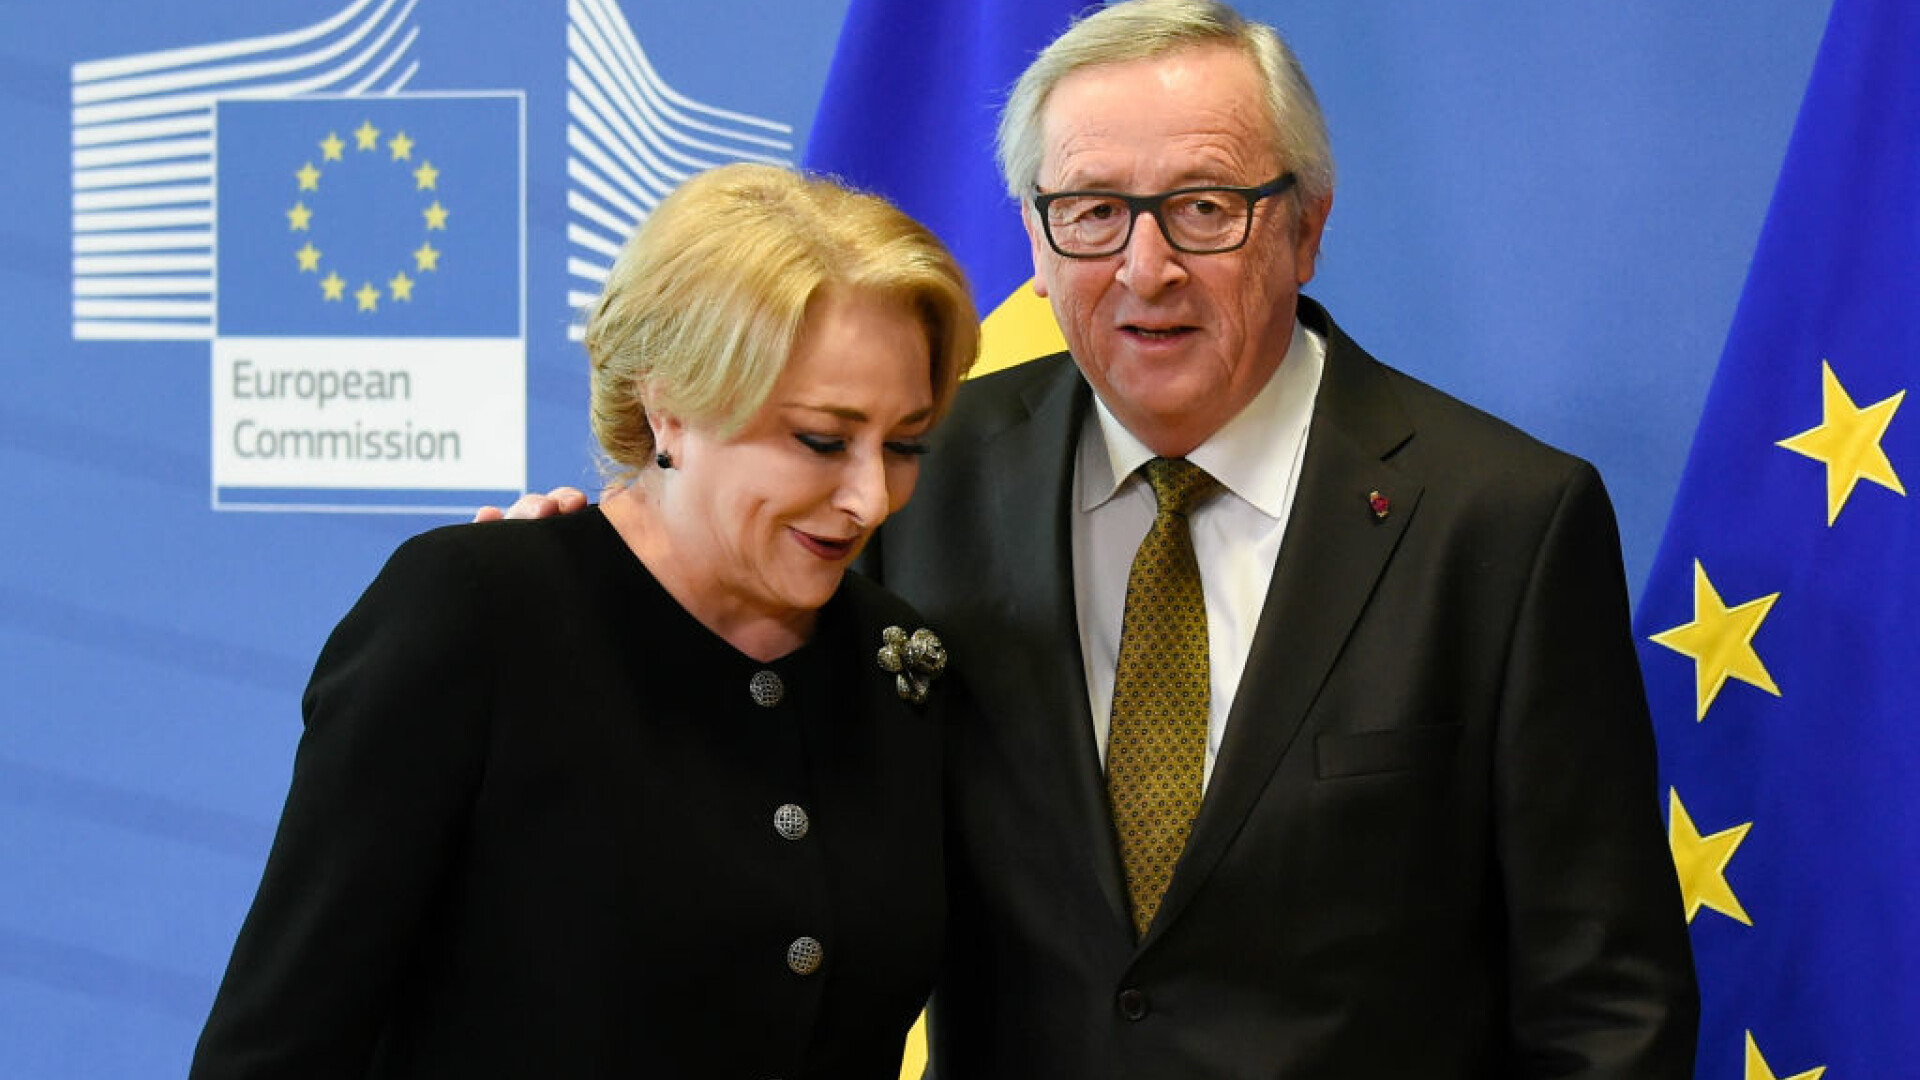 Jean Claude Juncker si Viorica Dancila